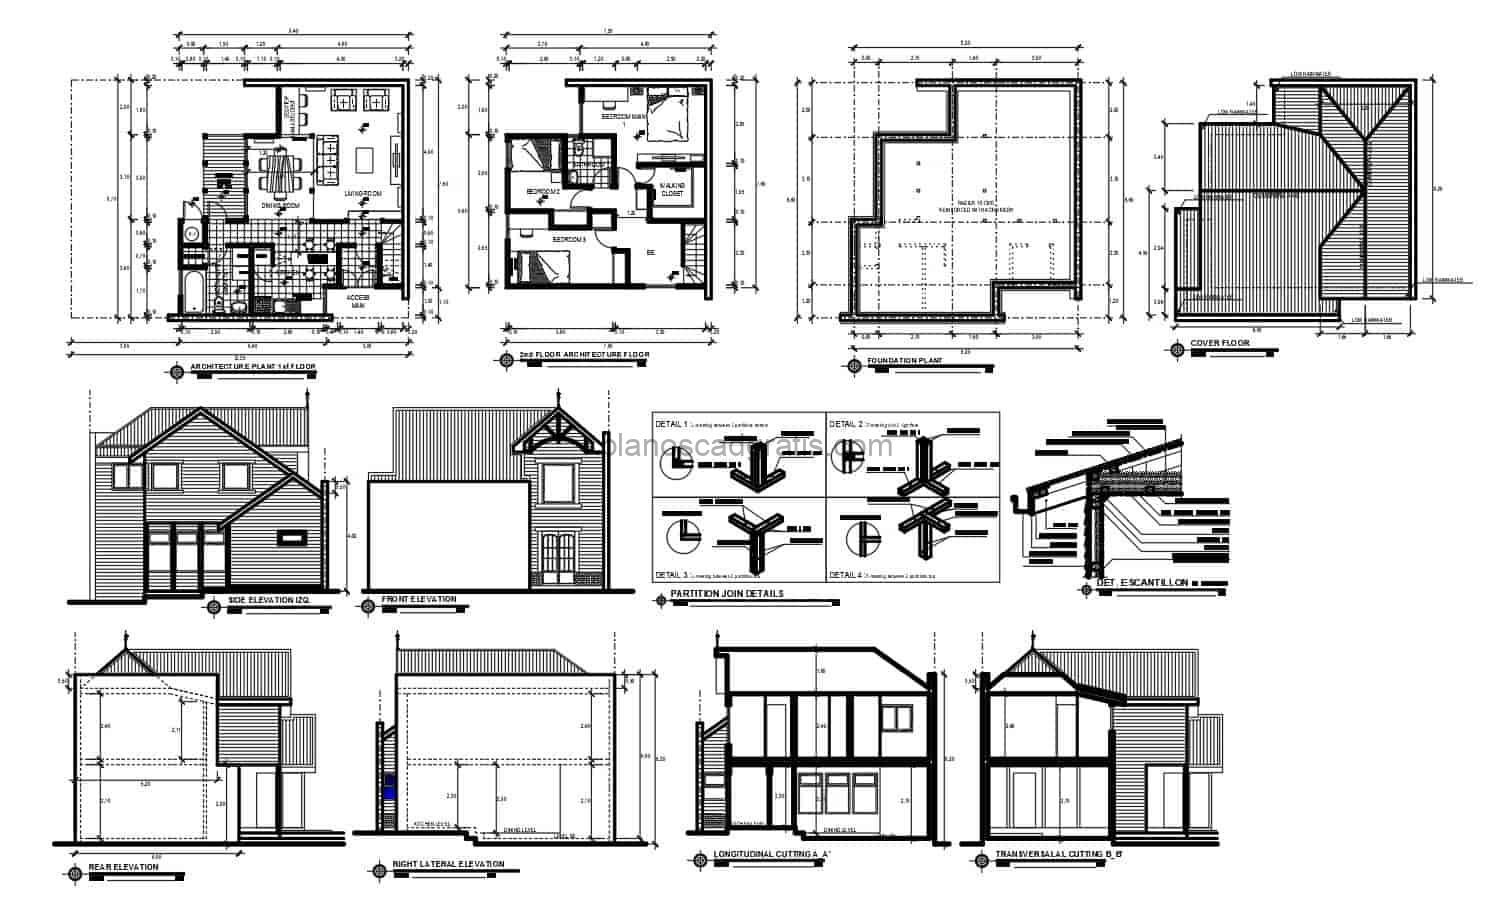 proyecto completo de casa de granja con planos detallados arquitectonicos y dimensionados para descarga gratis en formato dwg de autocad